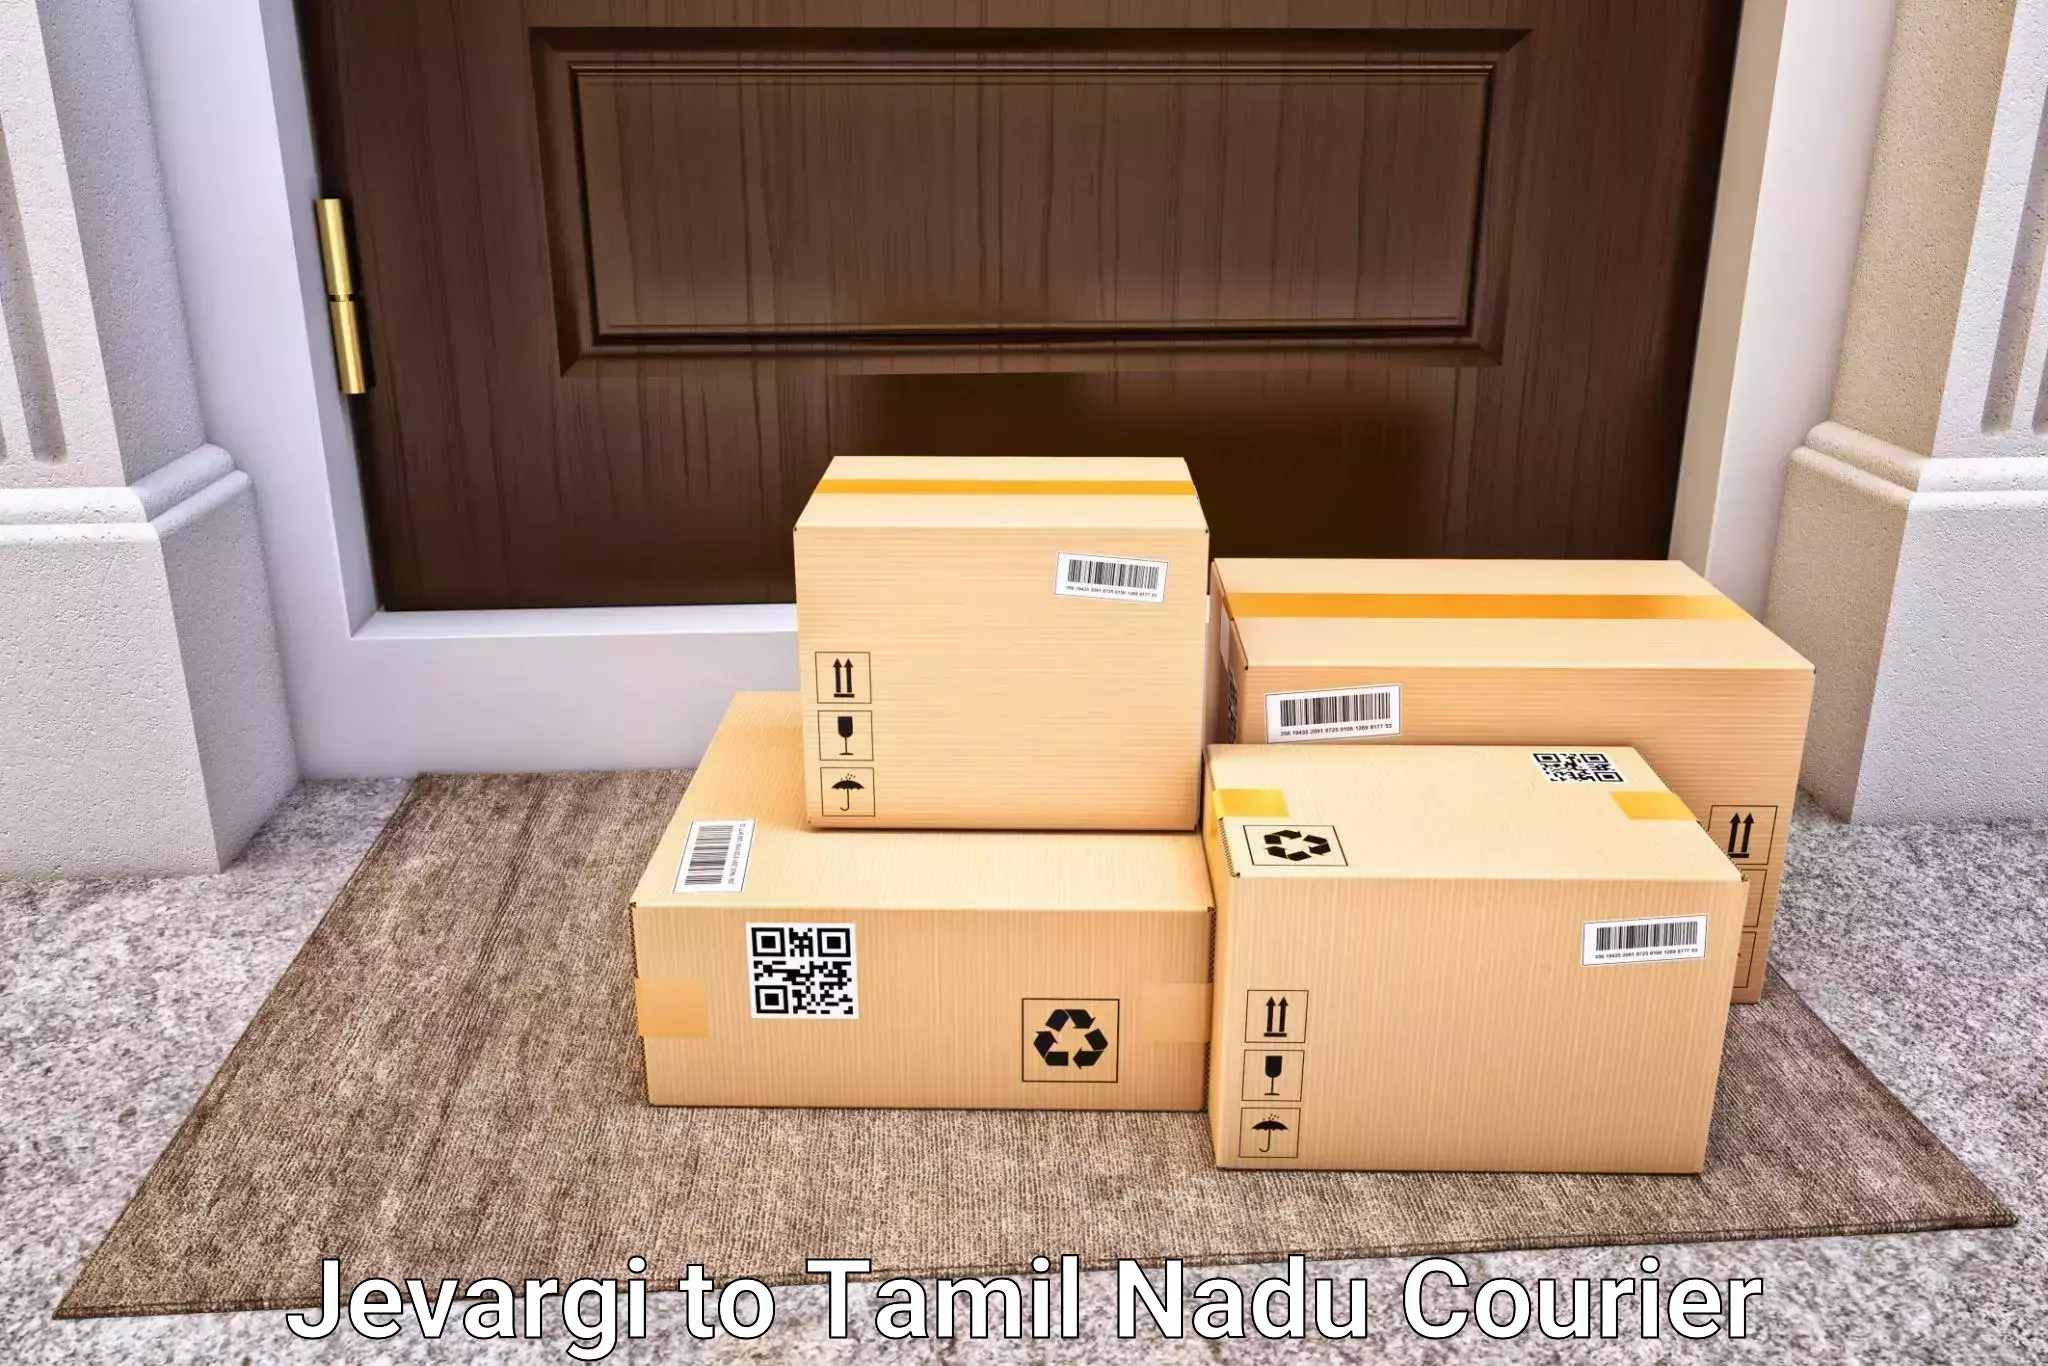 Hassle-free luggage shipping Jevargi to Pushpavanam